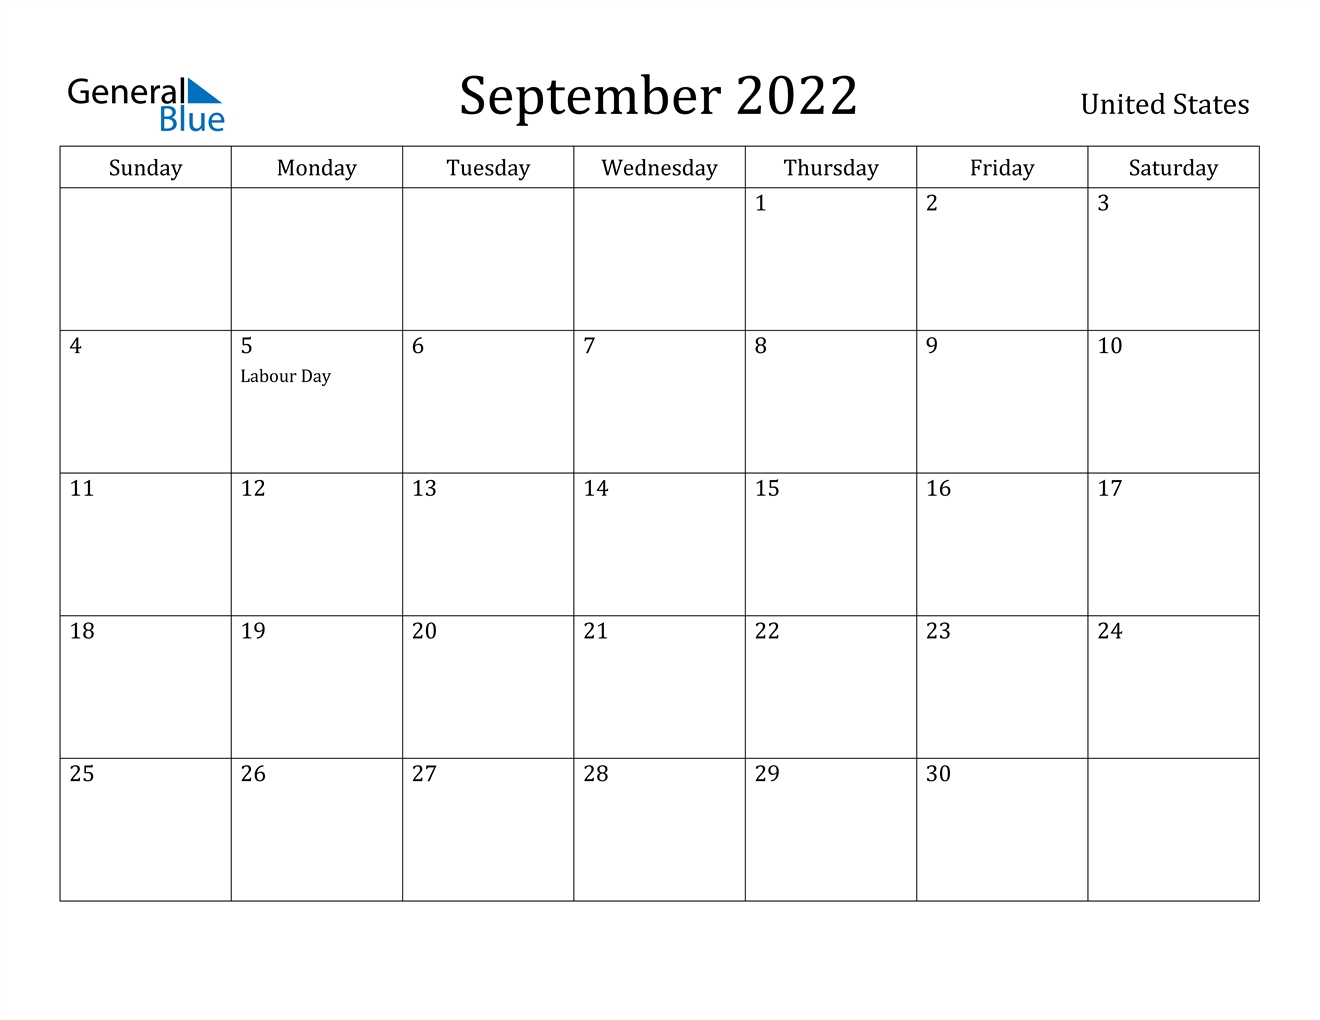 September 2022 Calendar - United States